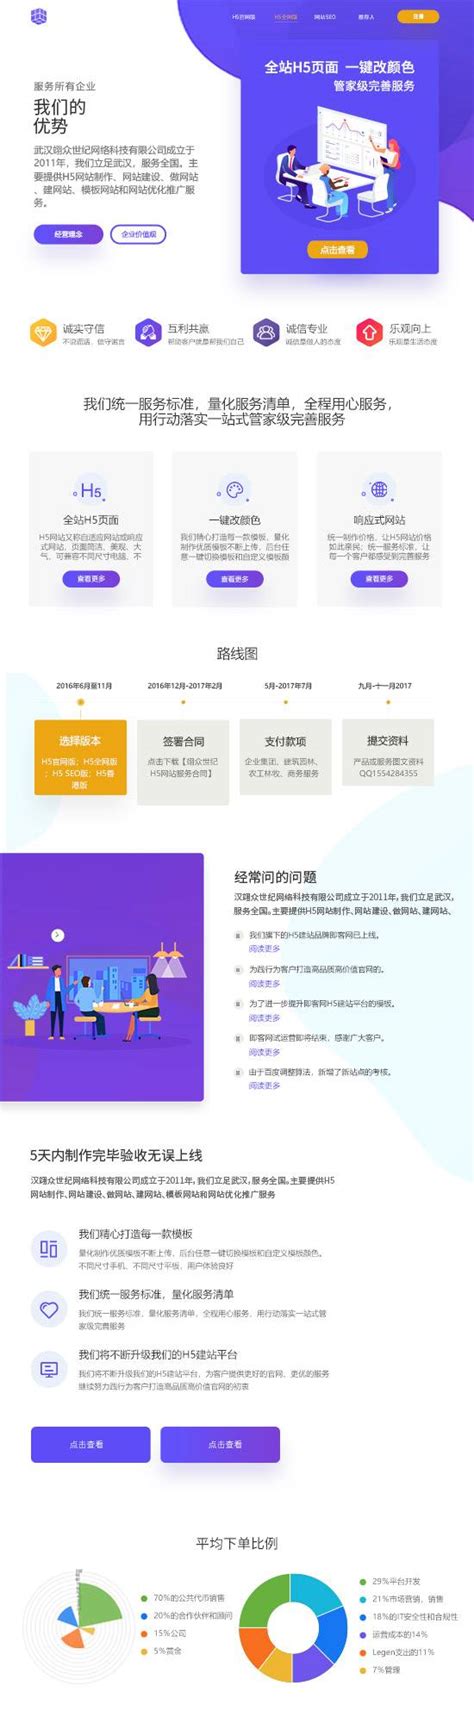 广州市行业网站制作平台